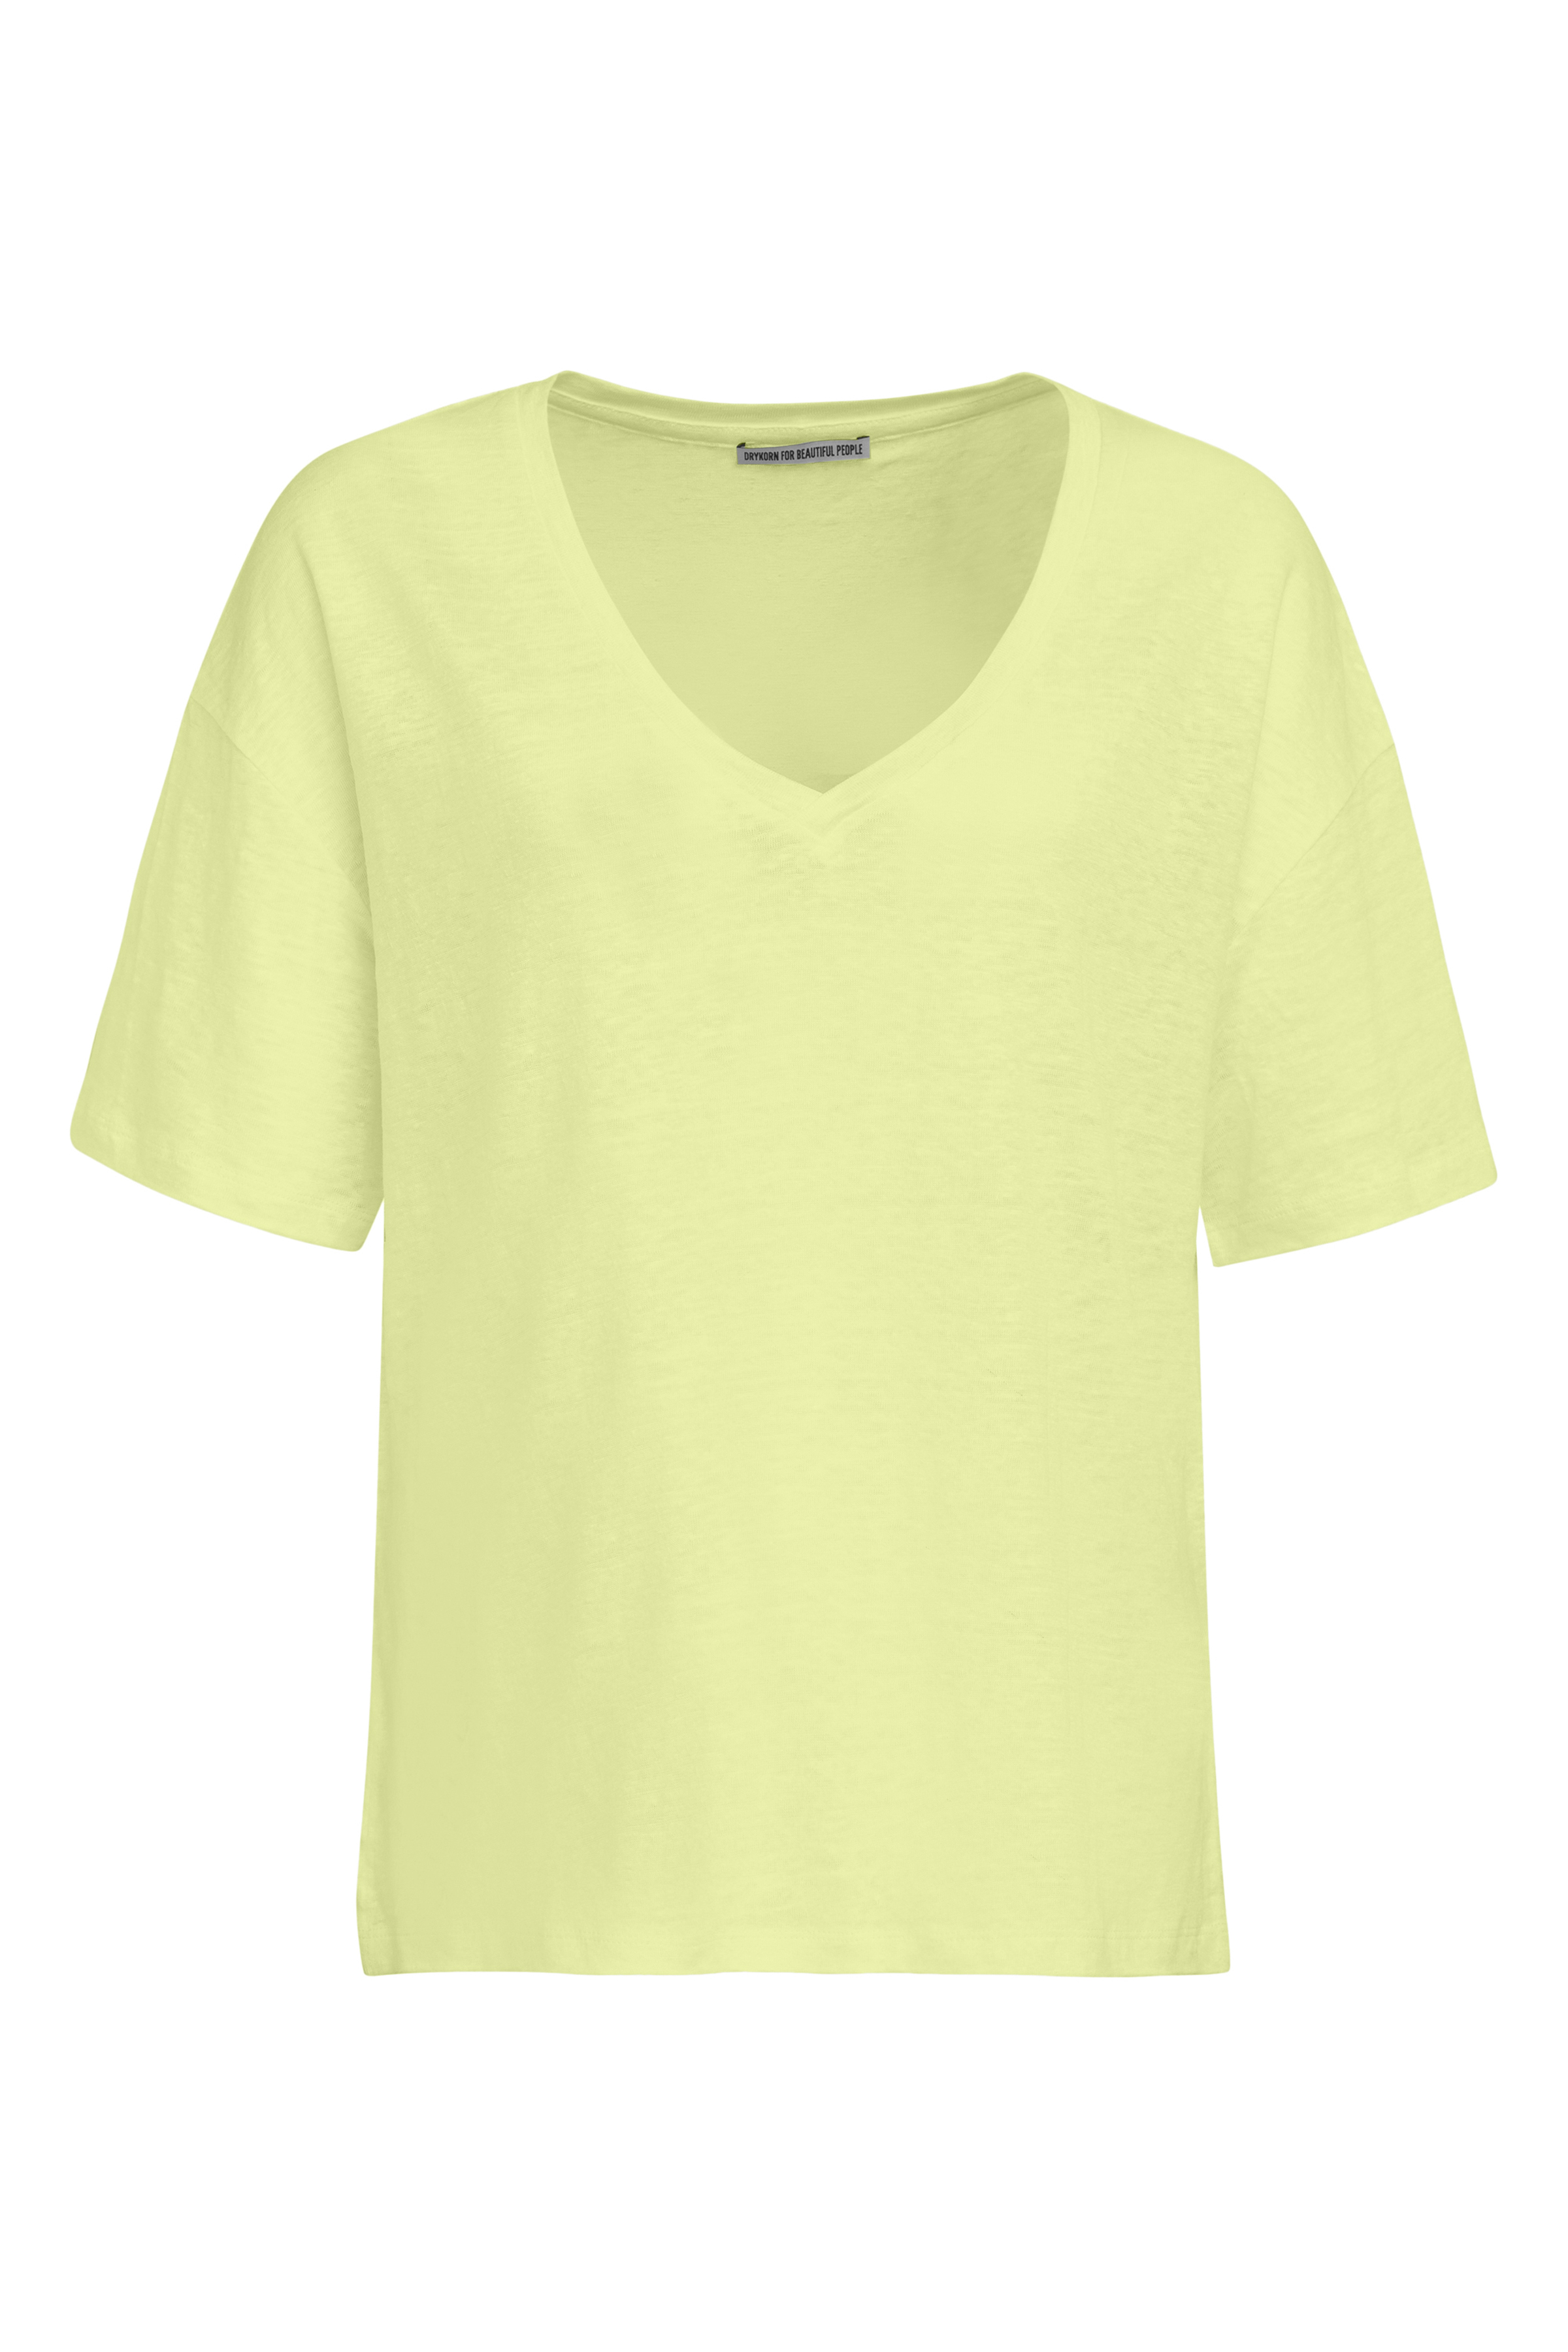 DRYKORN 520044 SVENNIE 10 Damen T-Shirt aus Leinen gelb 7801